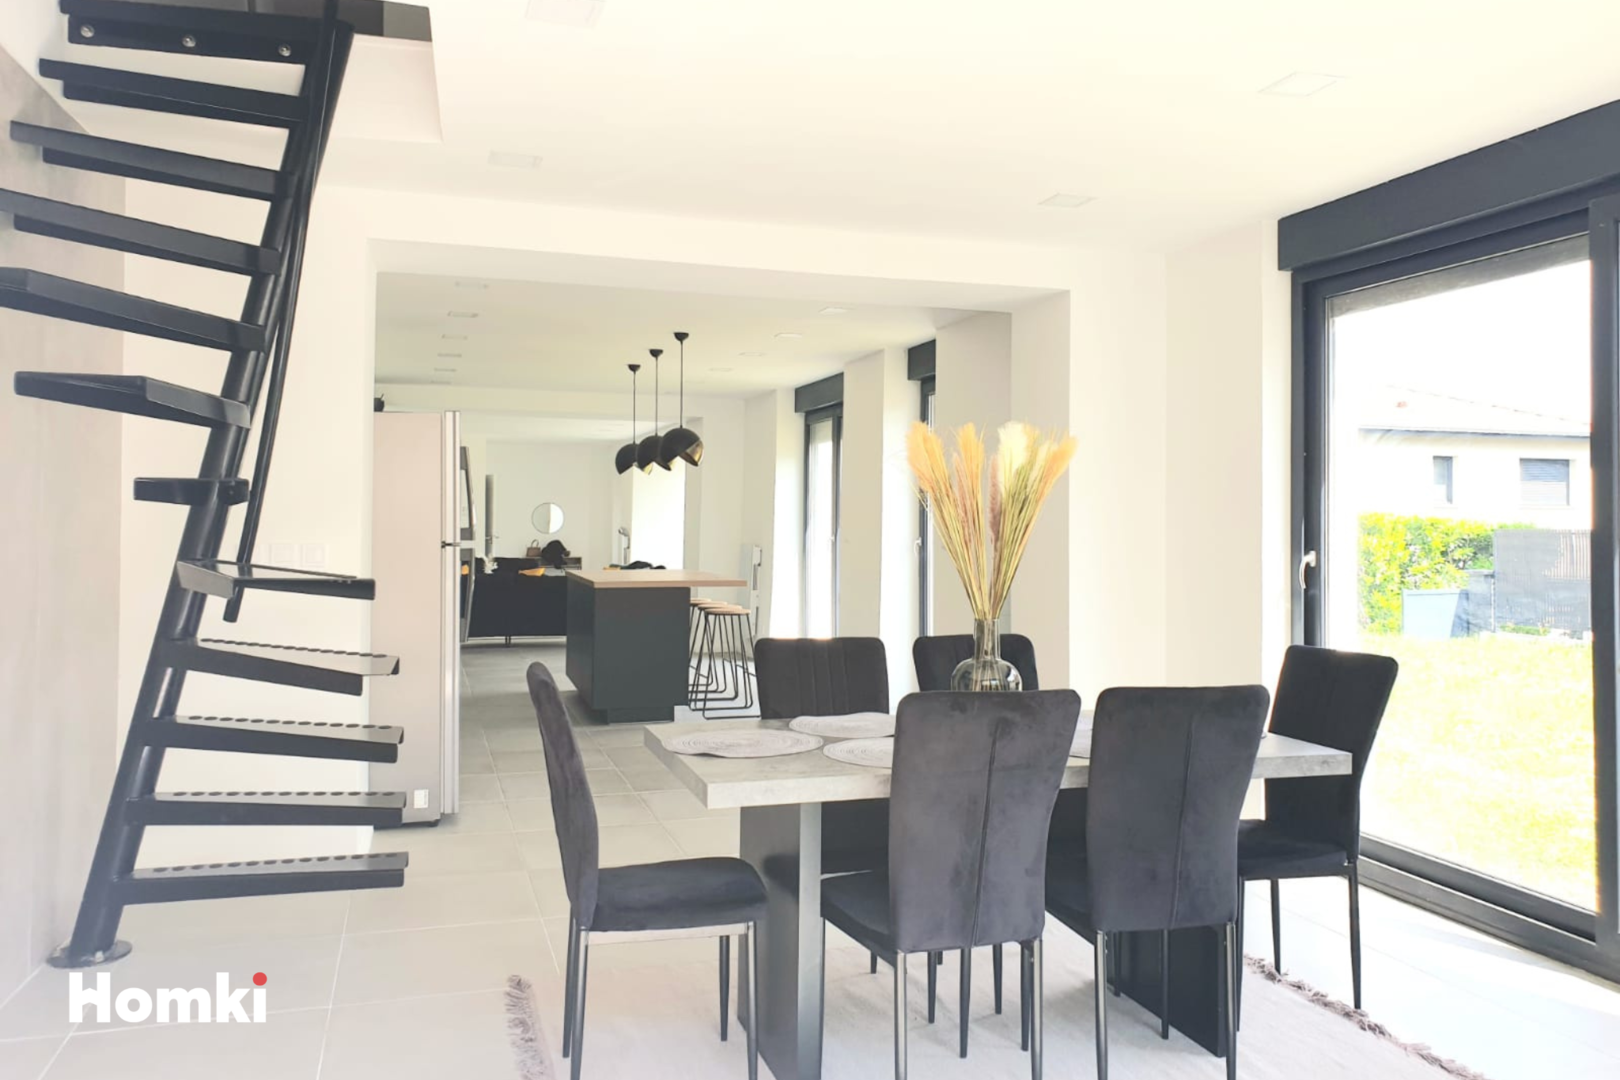 Homki - Vente Maison/villa  de 187.0 m² à Saint-Germain-au-Mont-d'Or 69650